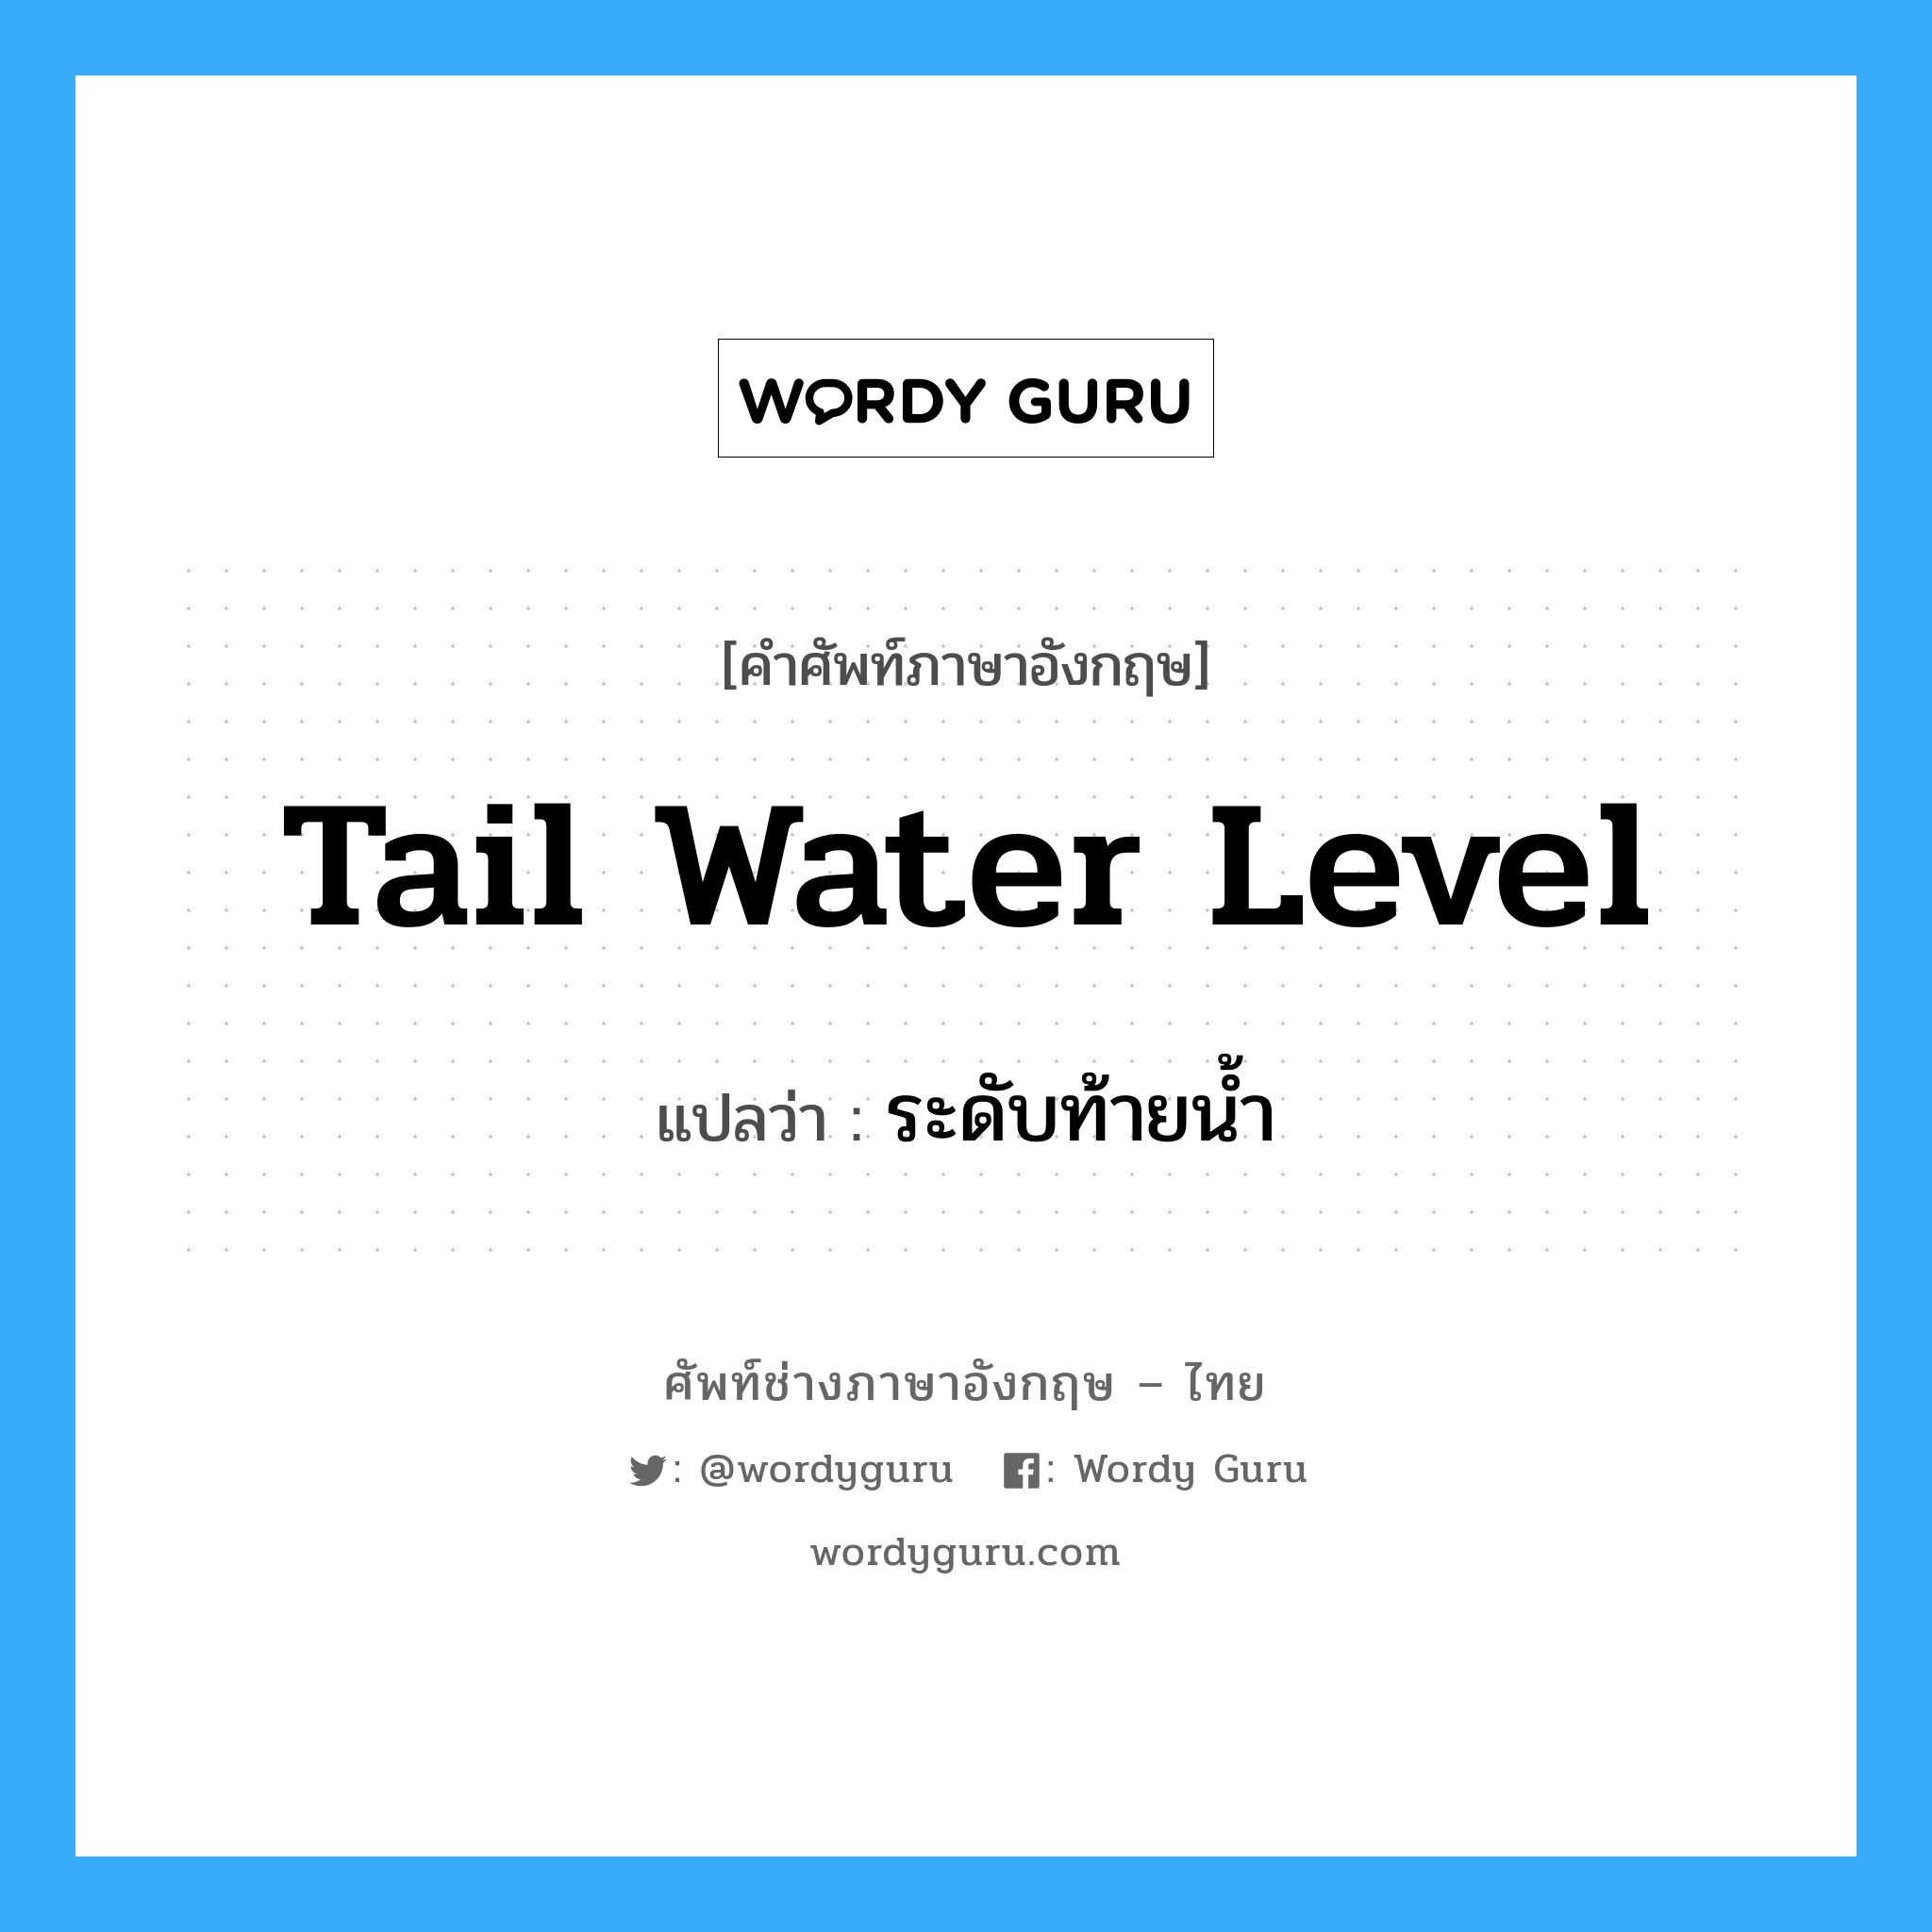 tail water level แปลว่า?, คำศัพท์ช่างภาษาอังกฤษ - ไทย tail water level คำศัพท์ภาษาอังกฤษ tail water level แปลว่า ระดับท้ายน้ำ